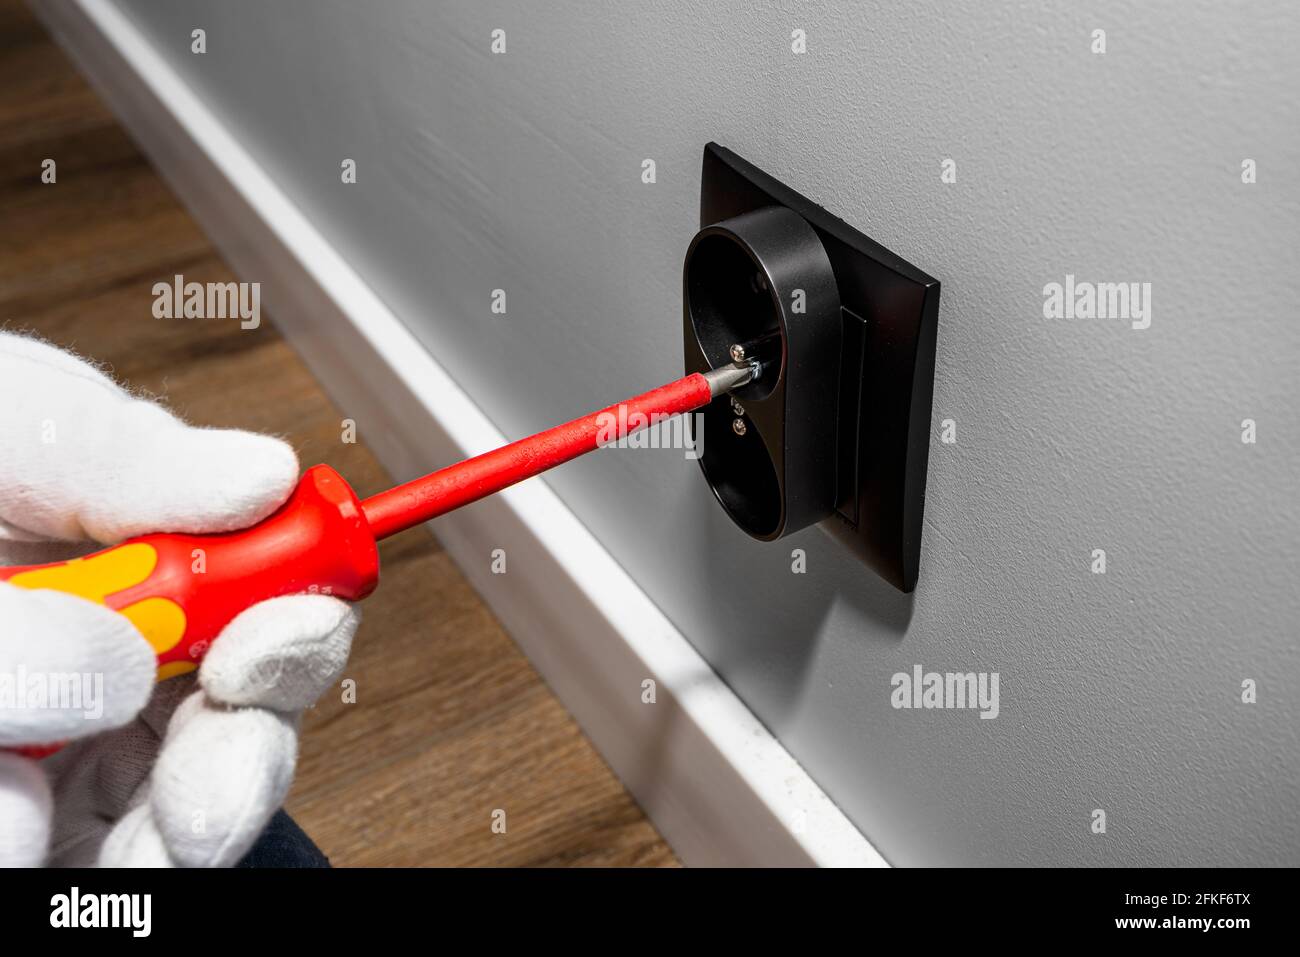 Ein Elektriker verwendet einen roten Schraubendreher, um eine schwarze, doppelt geerdete Steckdose in den Elektrokasten in der Raumwand zu Schrauben. Stockfoto